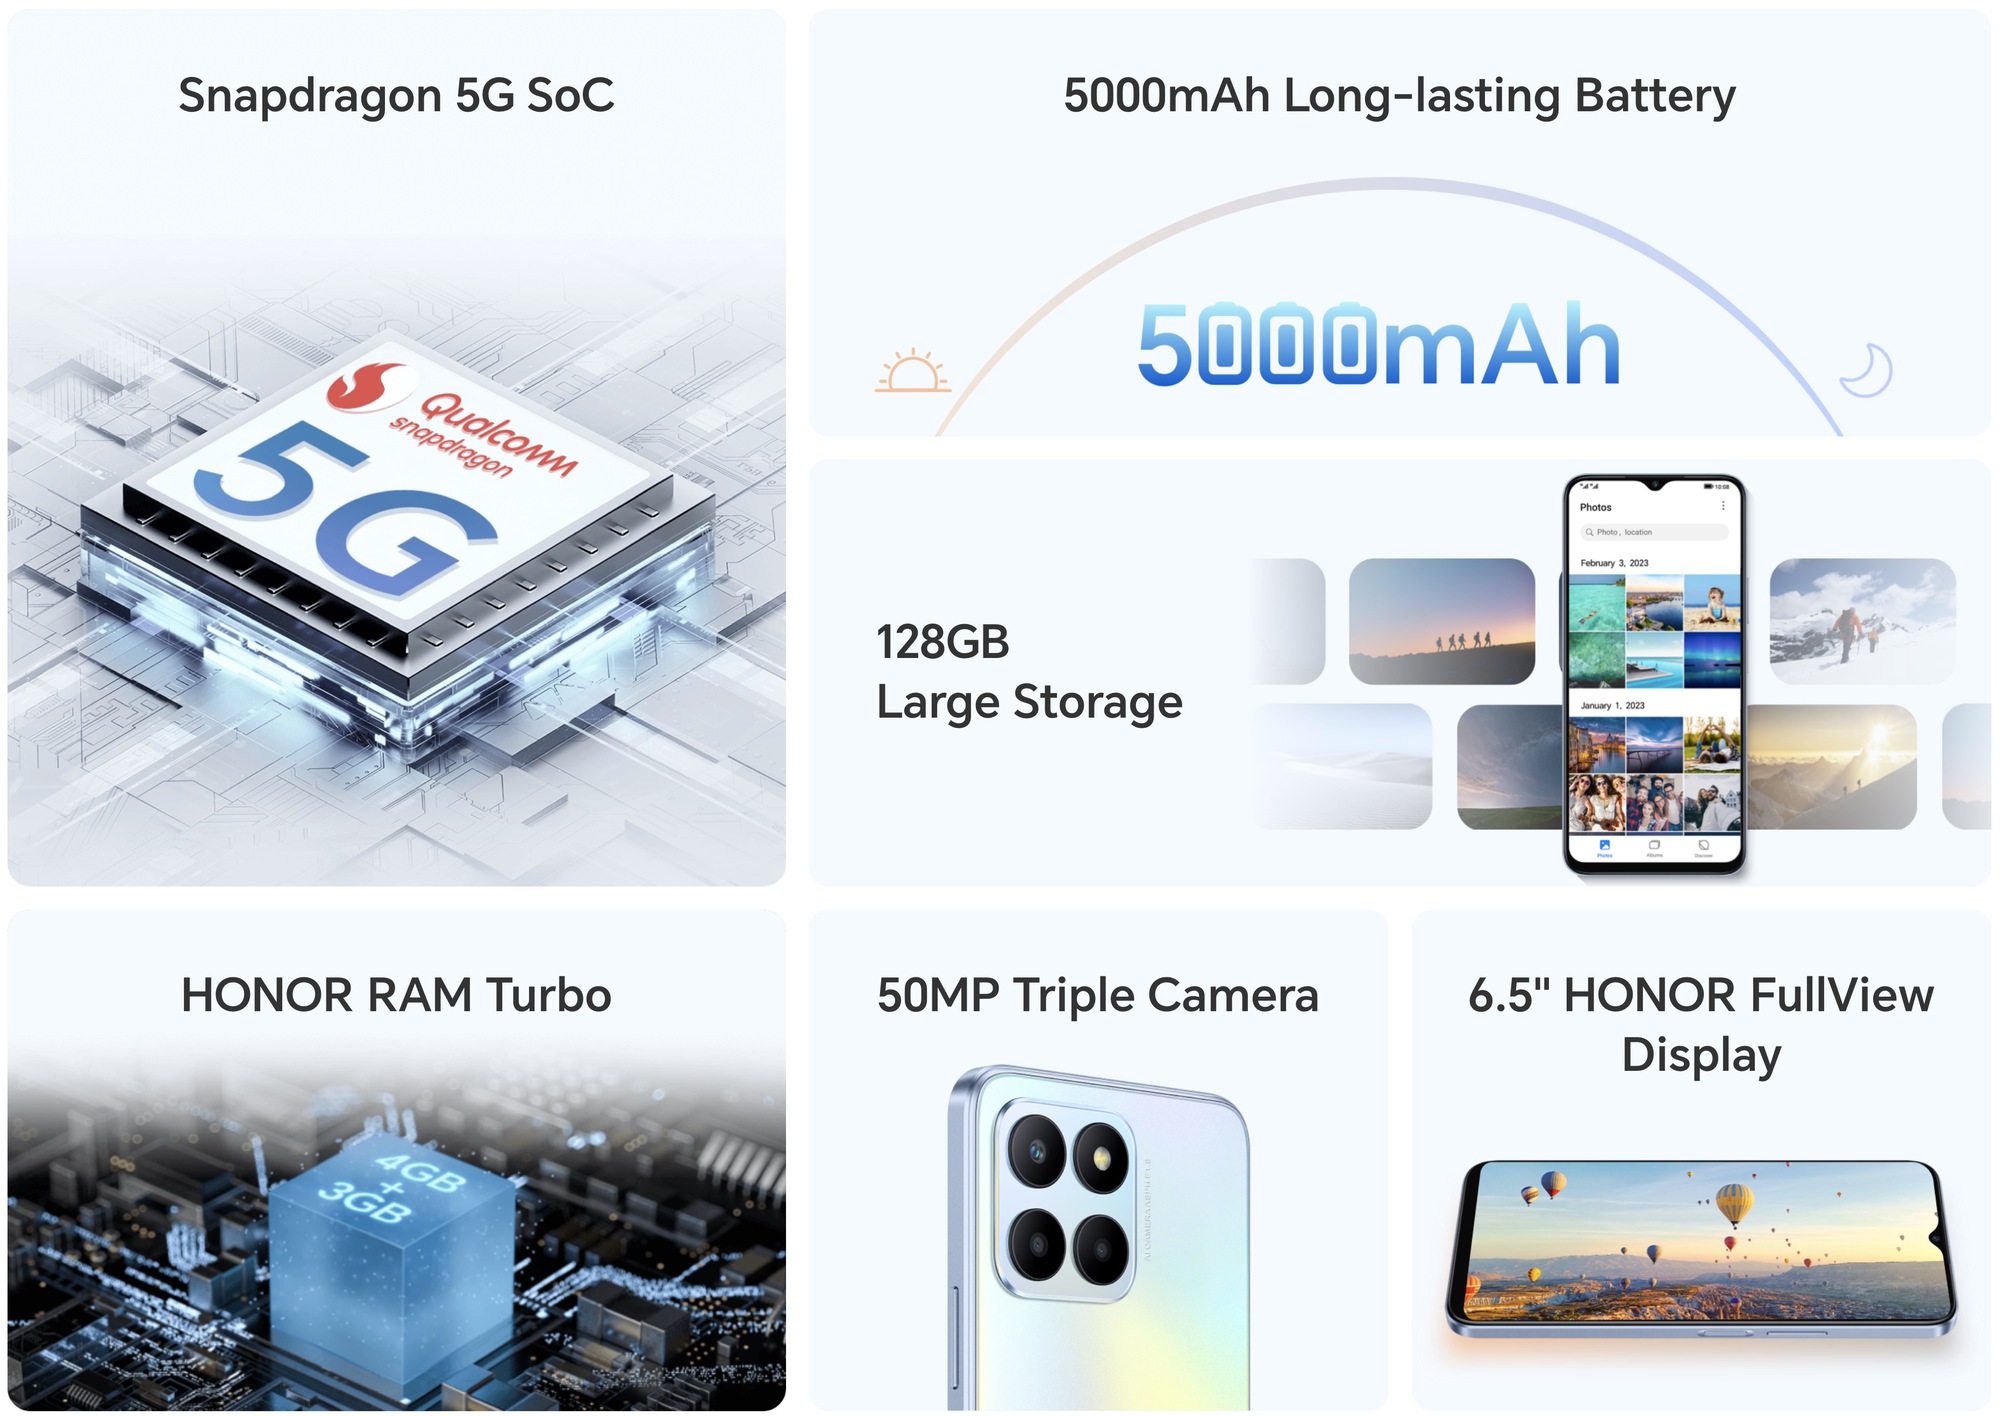 Honor ra mắt smartphone 5G giá rẻ, thiết kế đẹp, camera 50MP - Ảnh 2.